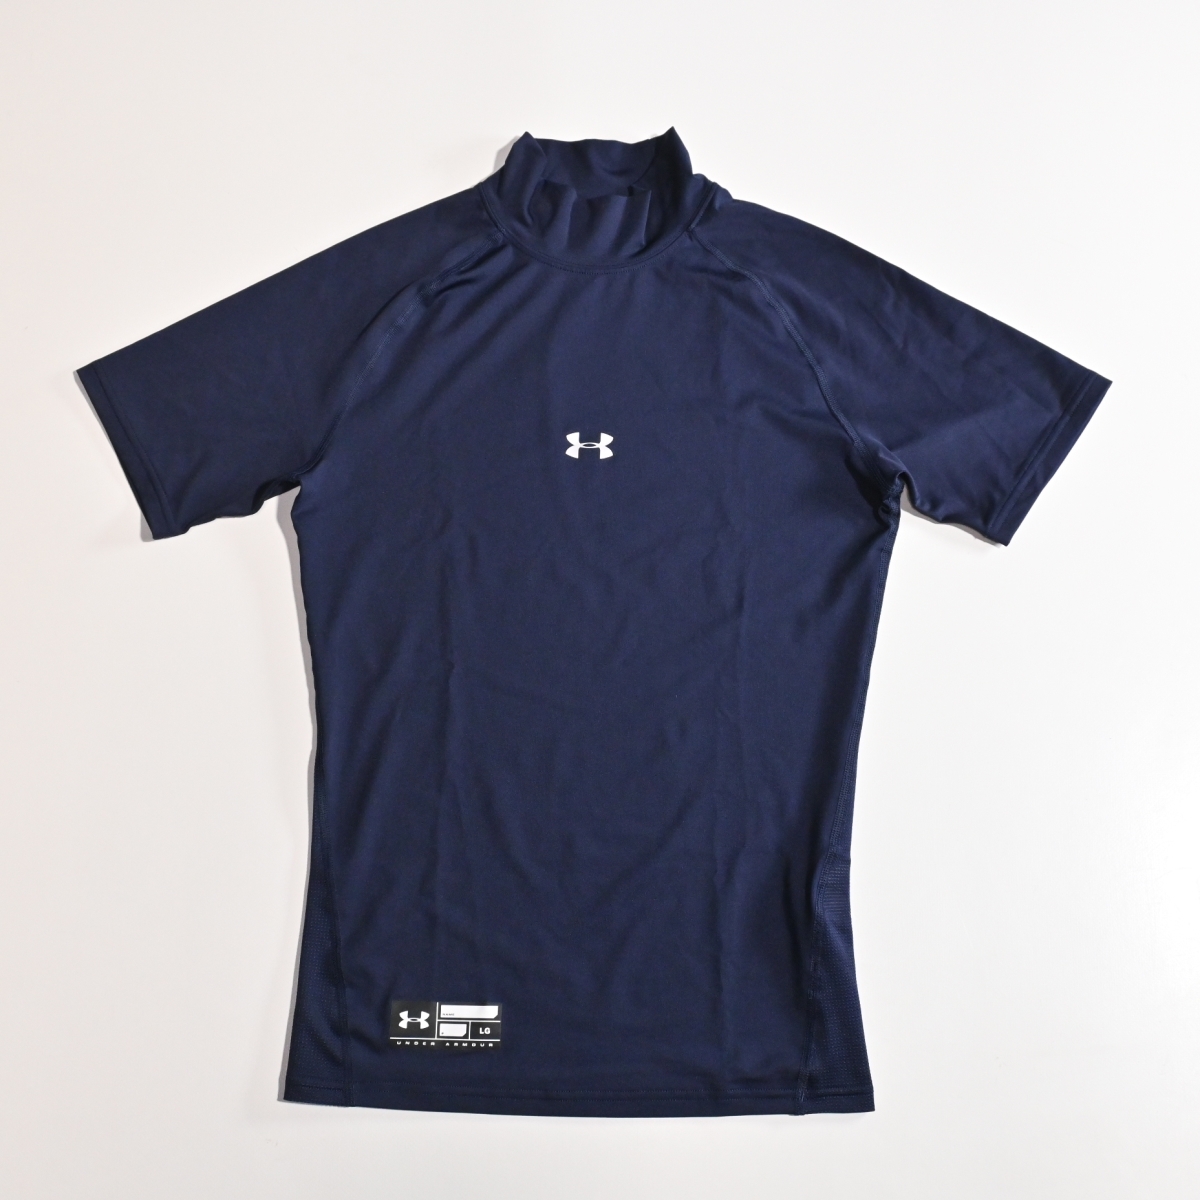 メンズL アンダーアーマー 紺 コンプレッション 半袖Tシャツの画像1